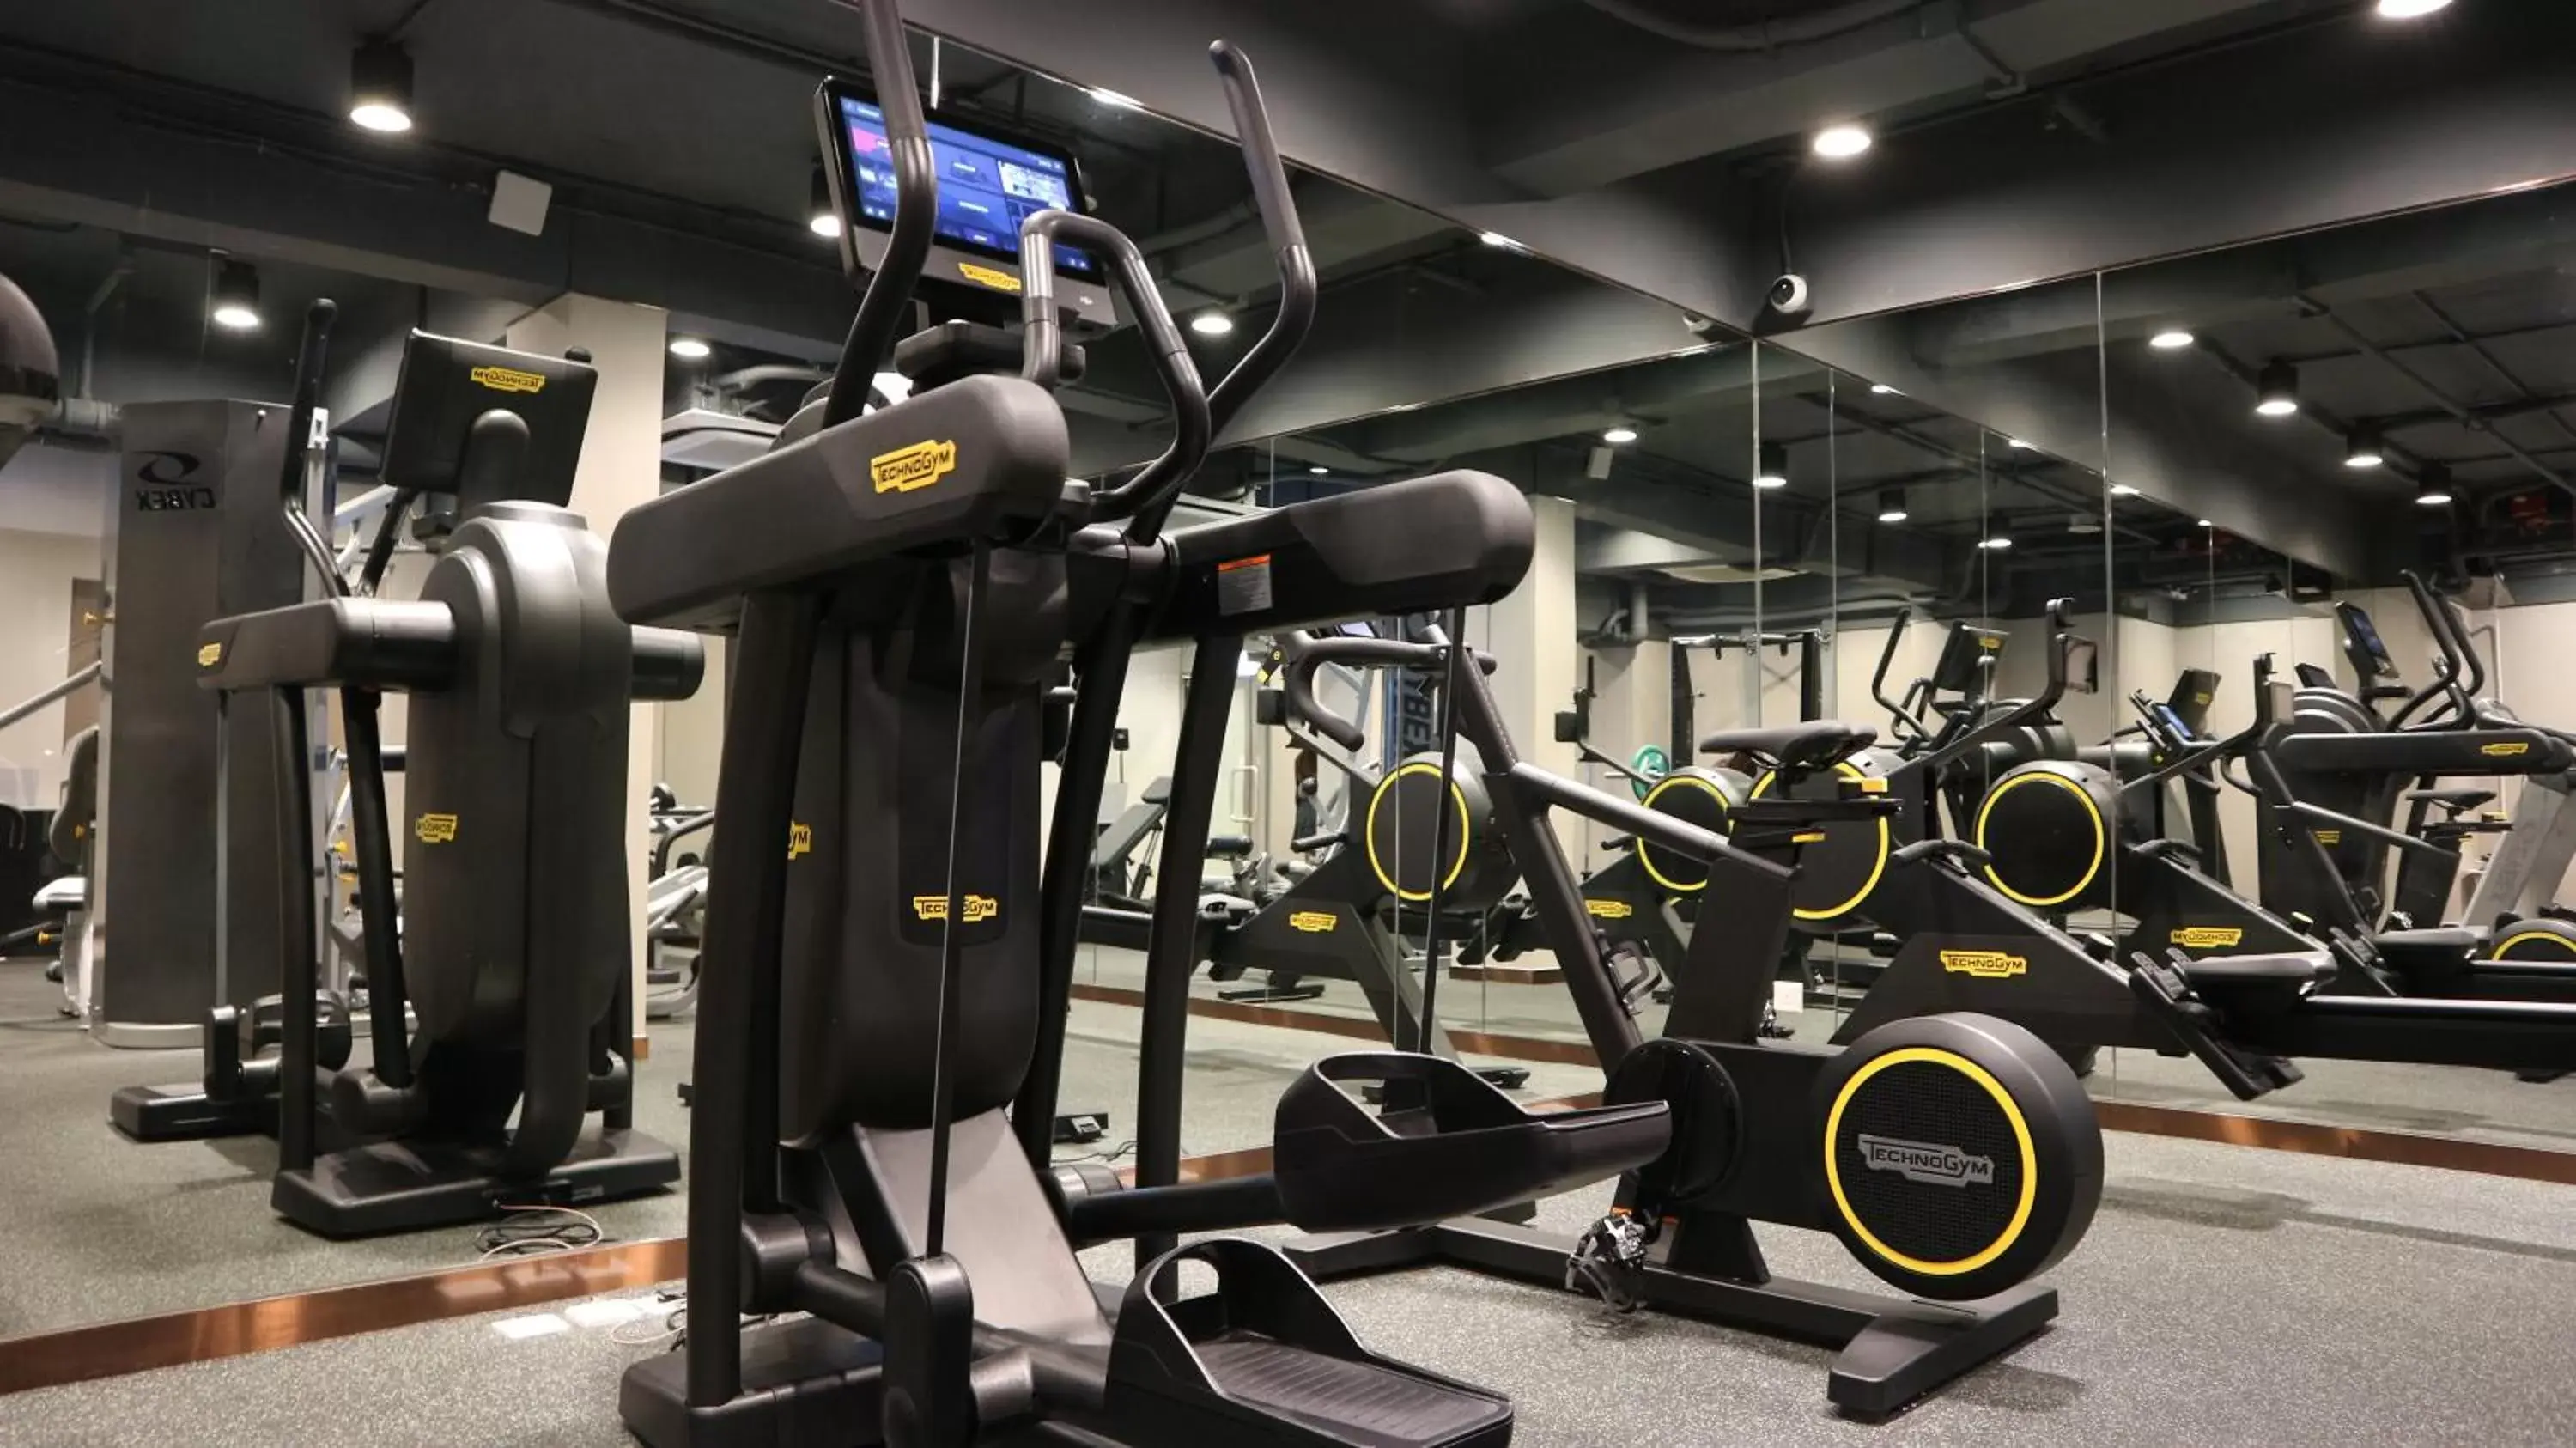 Fitness centre/facilities, Fitness Center/Facilities in Dorsett Wanchai, Hong Kong